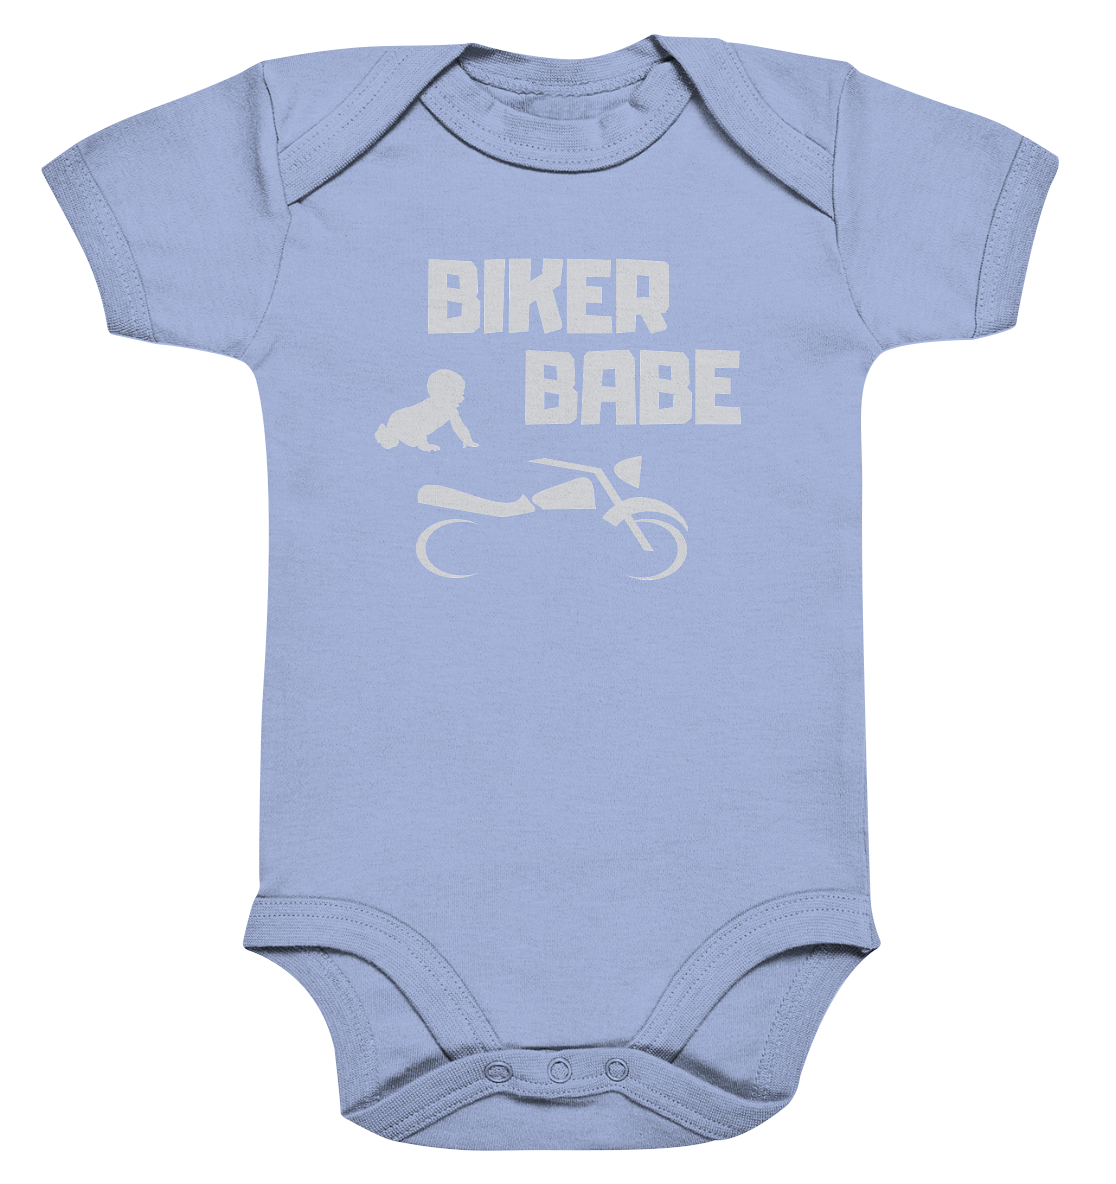 Baby-Body, Strampler, romper, "Biker Babe", motorcycle, motorbike, Motorrad, blau, blue